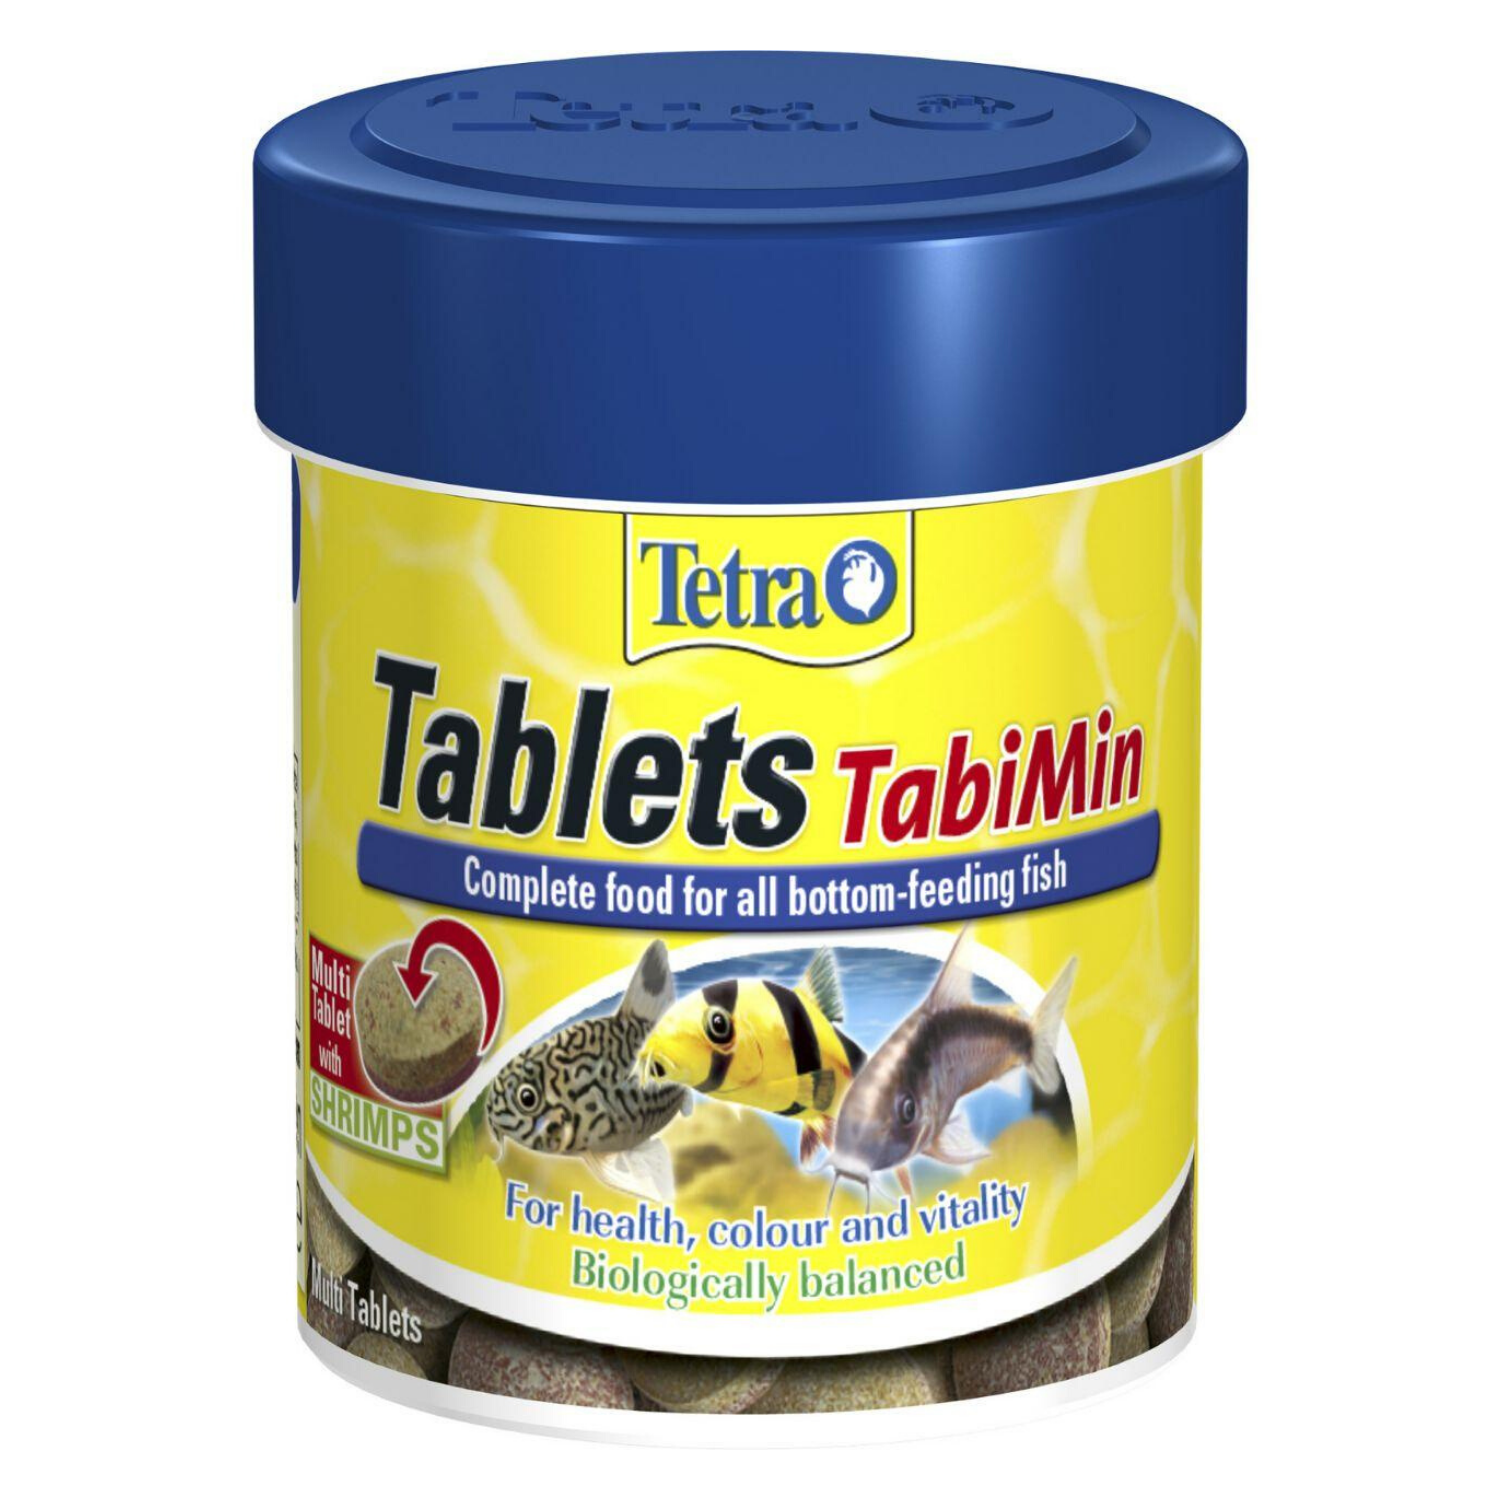 Tetra Tablets TabiMin - 36g